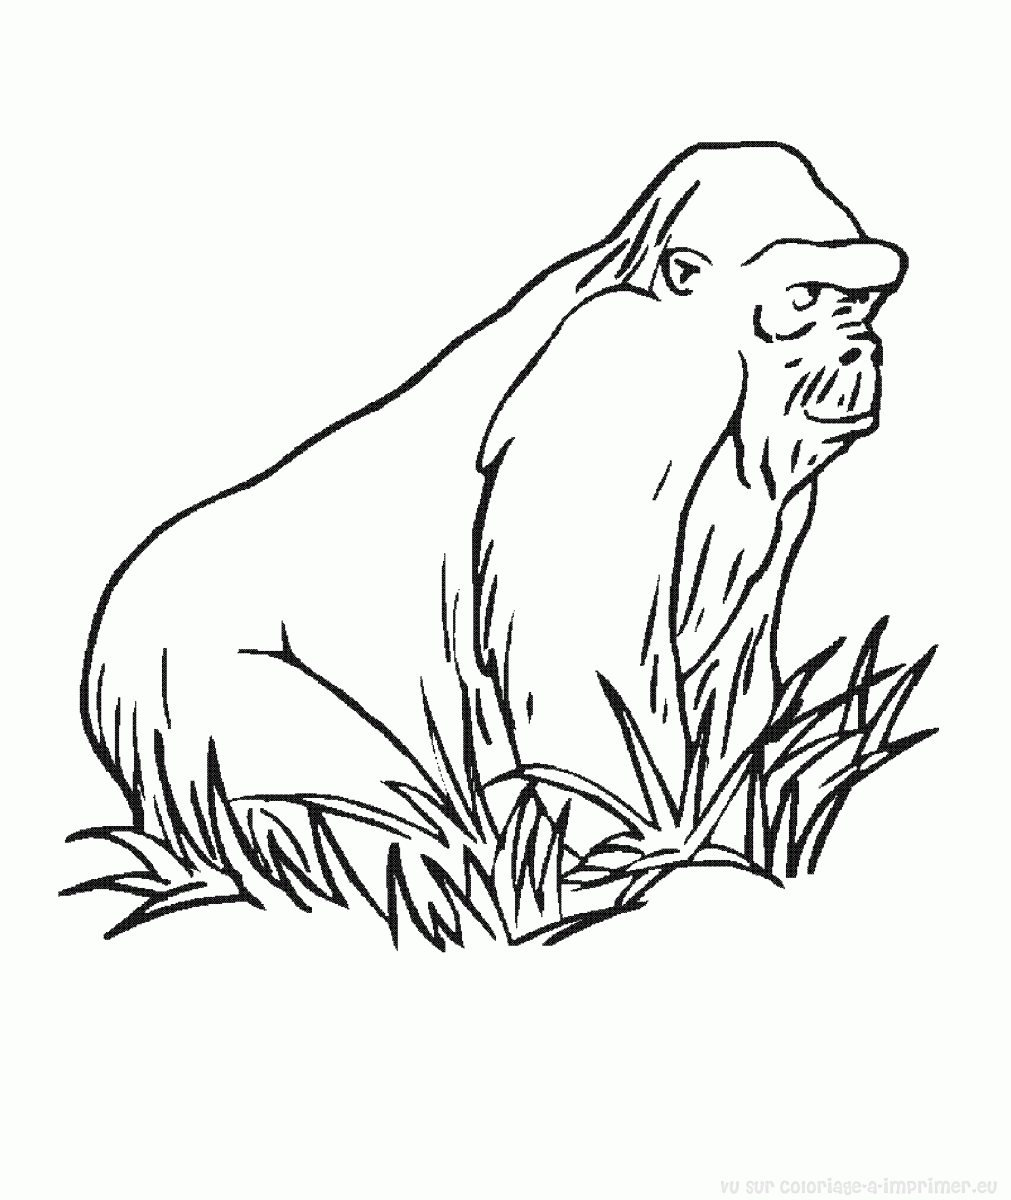 dessin � colorier de gorille en ligne